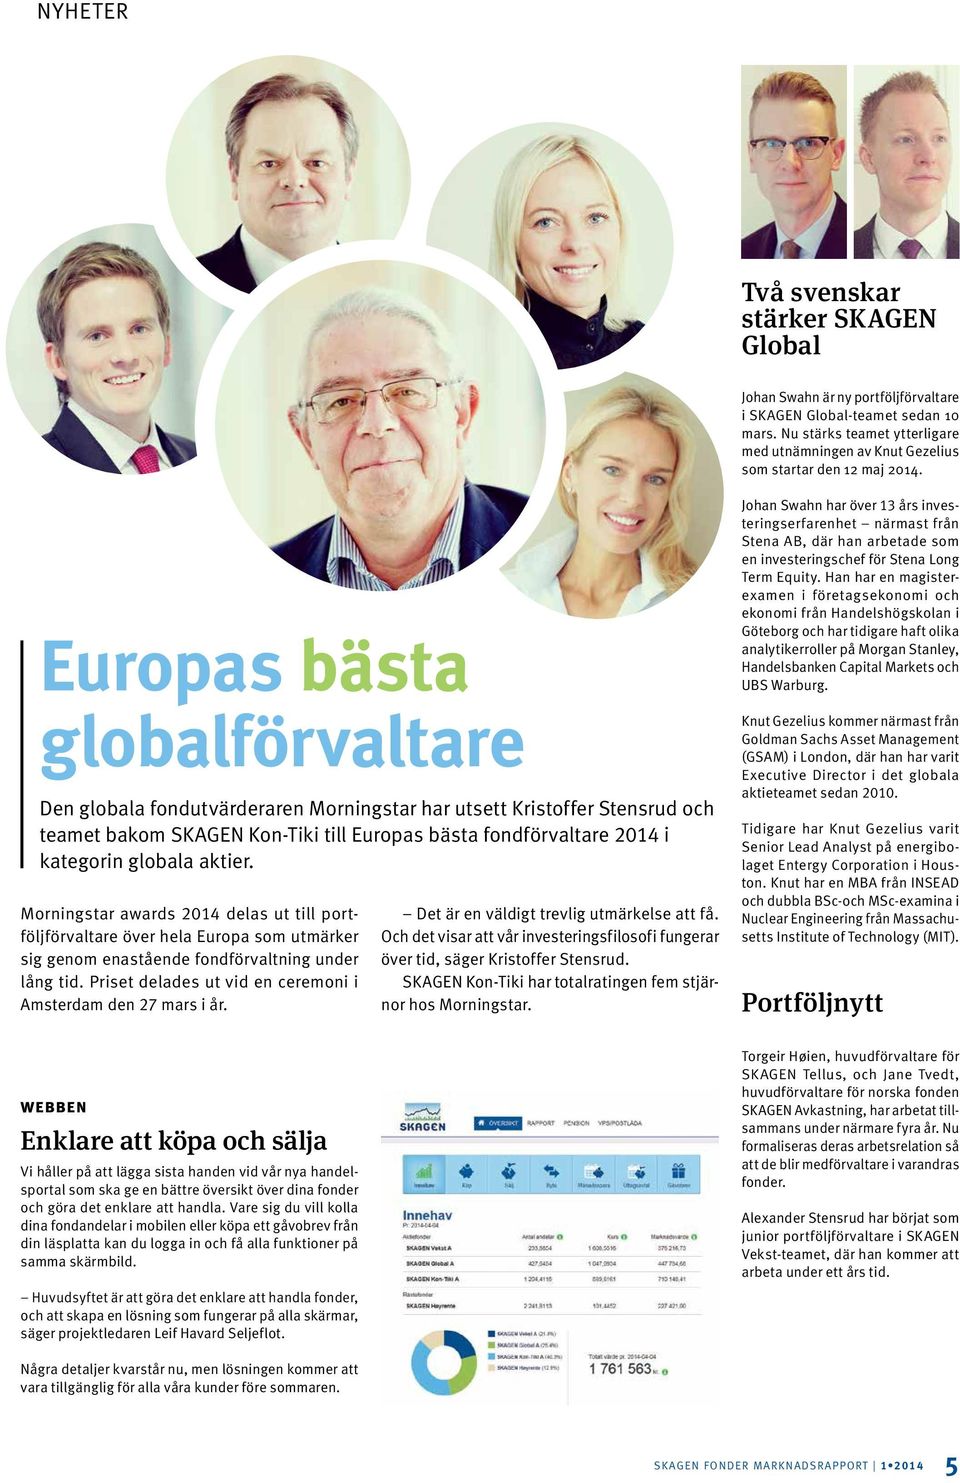 Europas bästa globalförvaltare Den globala fondutvärderaren Morningstar har utsett Kristoffer Stensrud och teamet bakom SKAGEN Kon-Tiki till Europas bästa fondförvaltare 2014 i kategorin globala